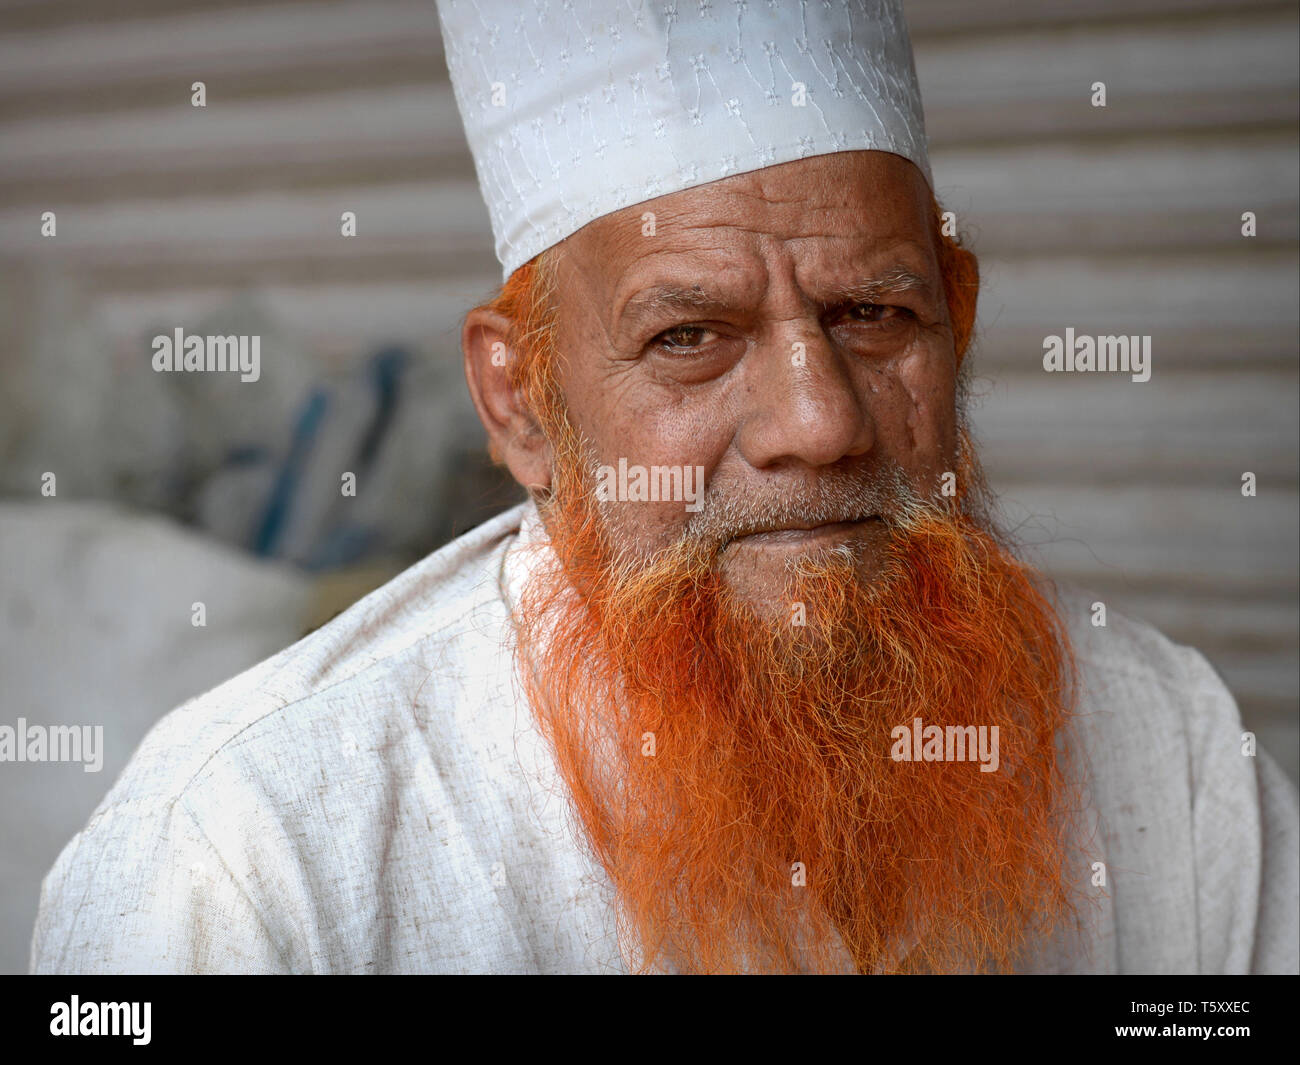 Anziani indiano musulmano di Rajasthani taylor con henna-tinto islamica e barba bianca preghiera islamica il cappuccio (taqiyah) pone per la fotocamera. Foto Stock